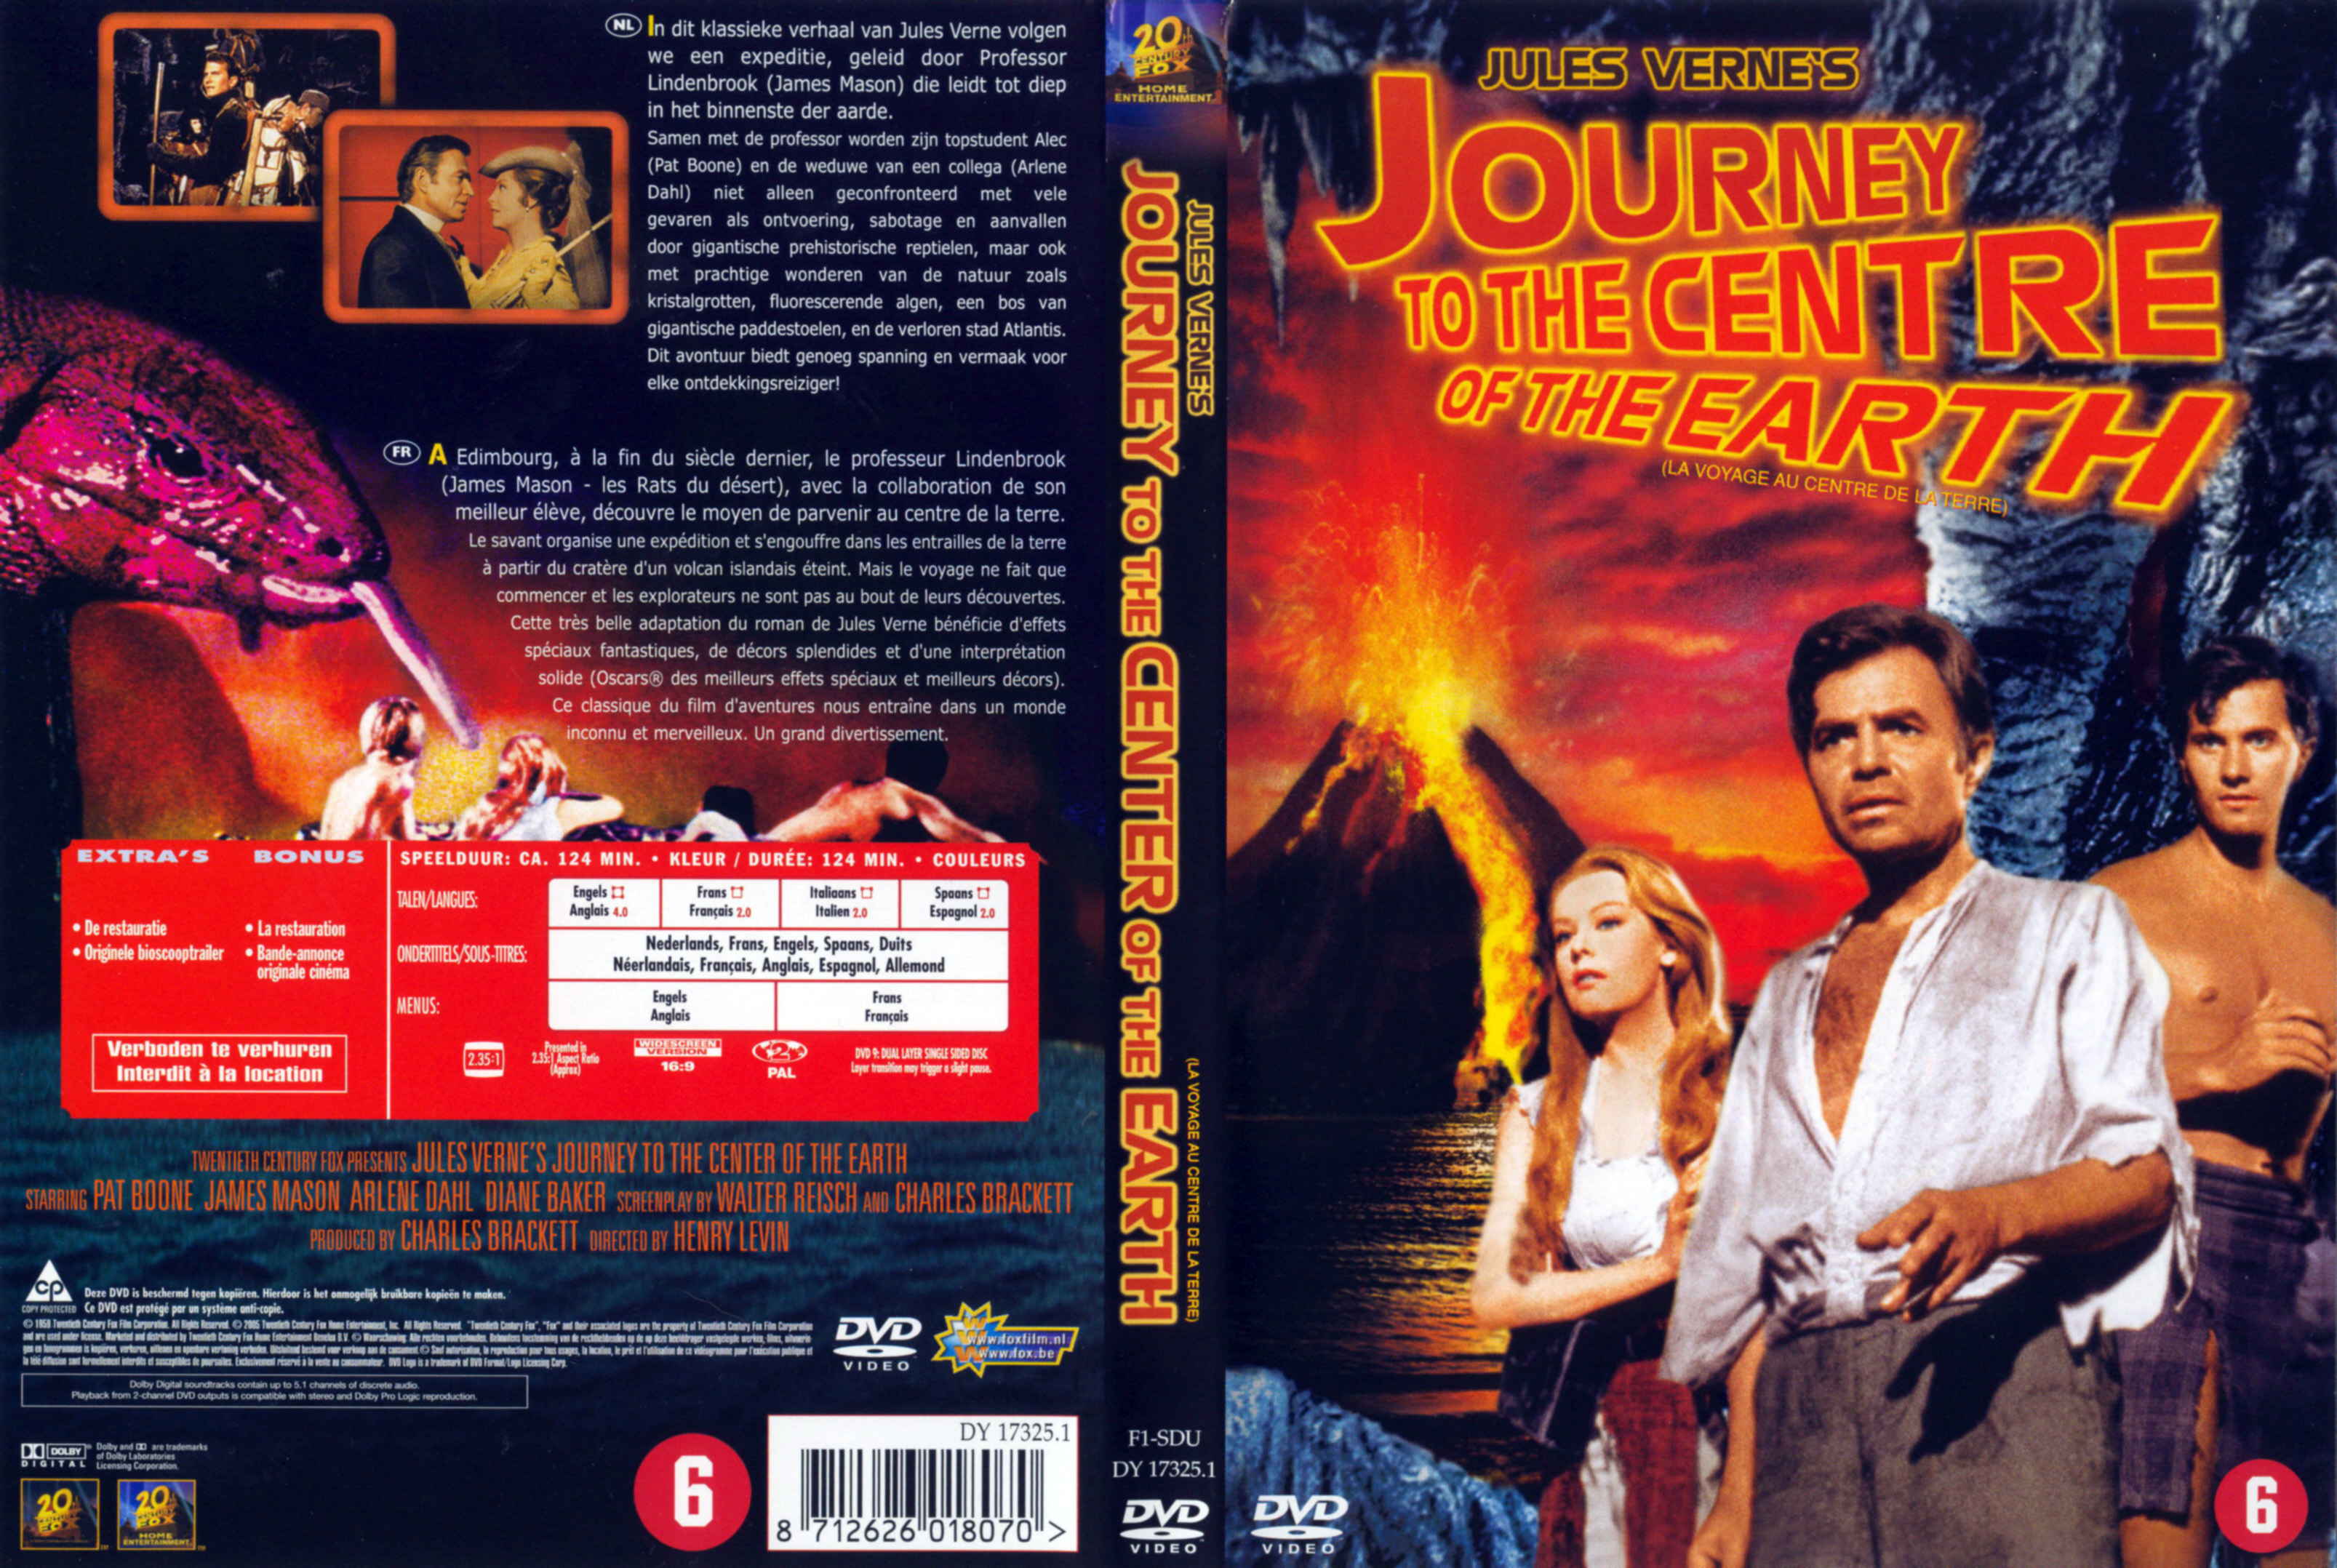 Jaquette DVD Journey to the centre of the earth - Voyage au centre de la terre (1959)